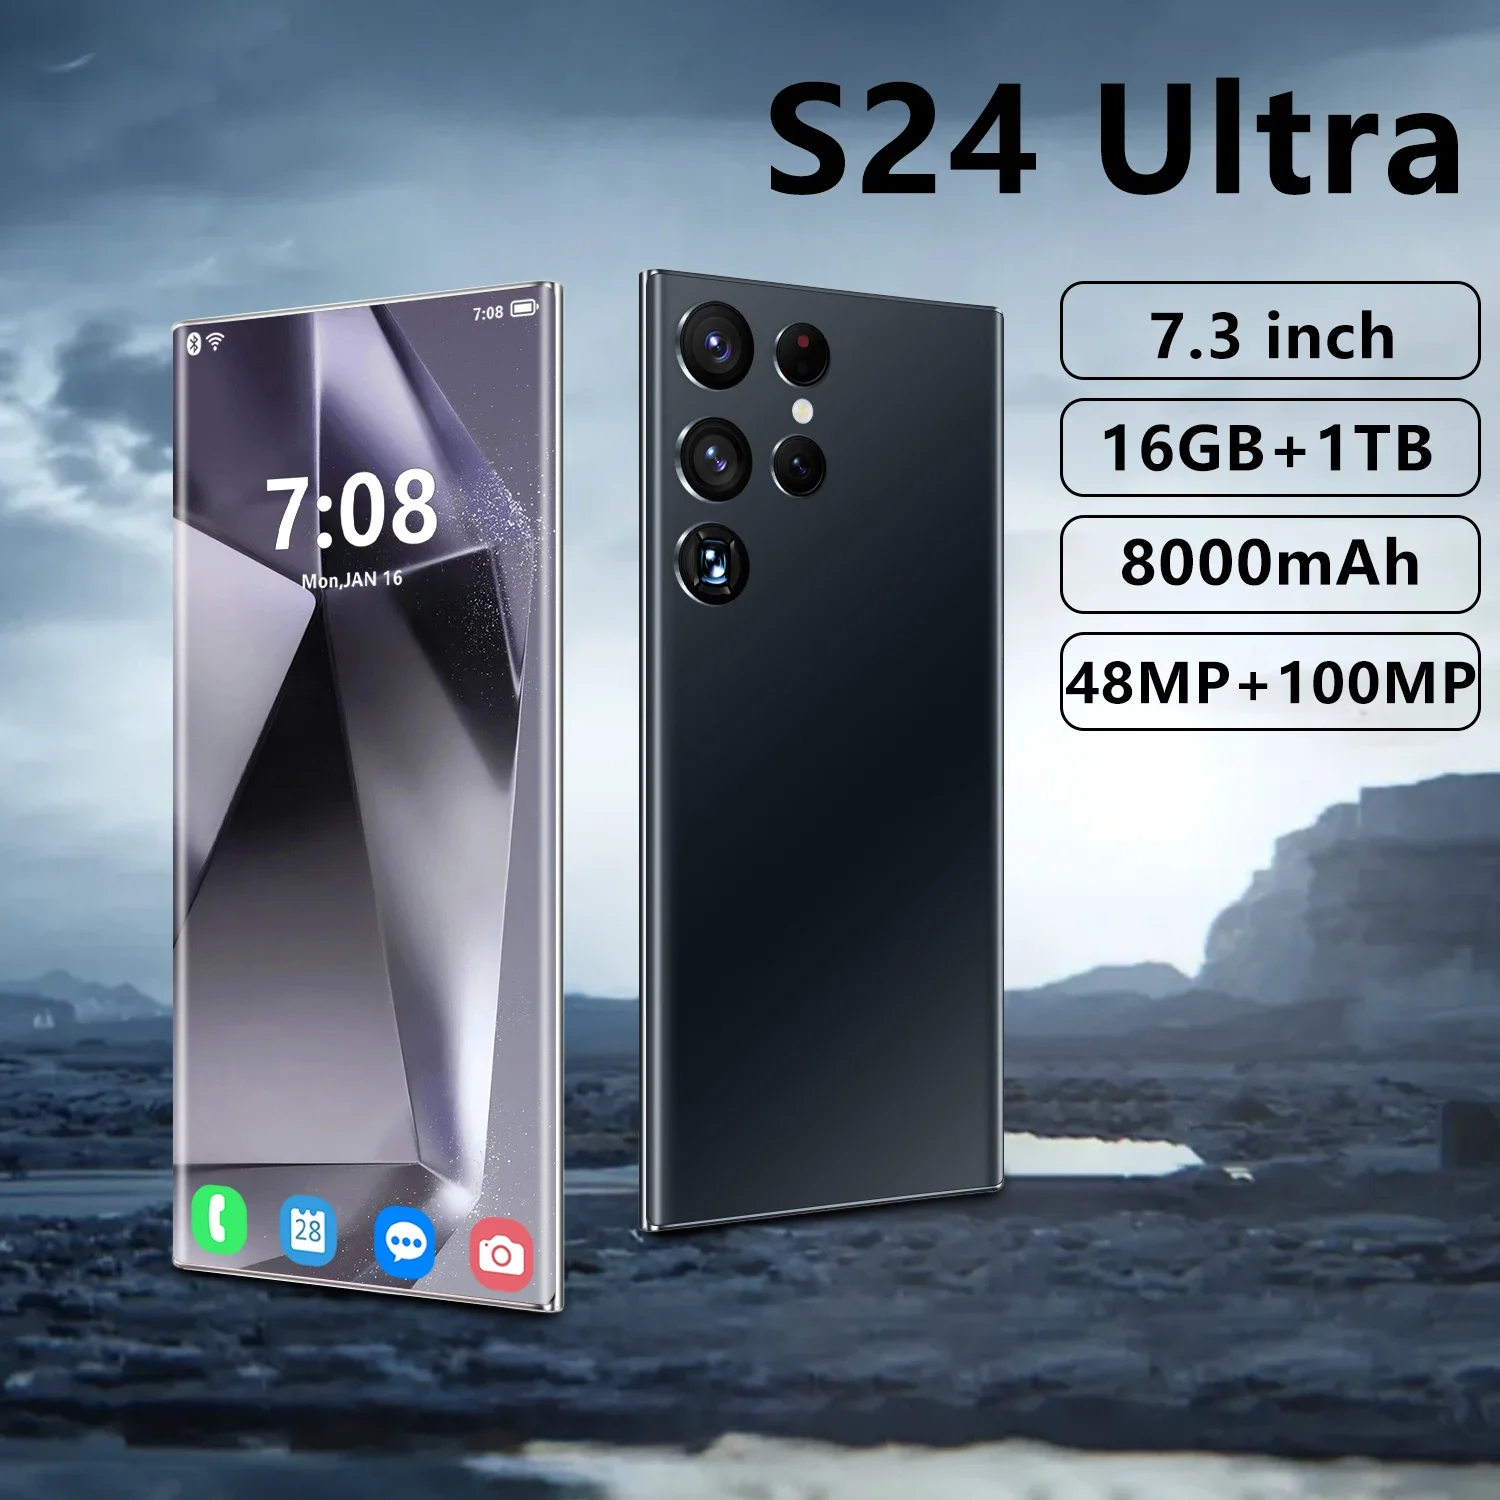 

Оригинальный смартфон S24 Ultra, 7,3 дюйма, Celulares 48 Мп + Мп, Android, мобильные телефоны, разблокированный сотовый телефон 16 ГБ + 1 ТБ, 4G/телефон с двумя Sim-картами